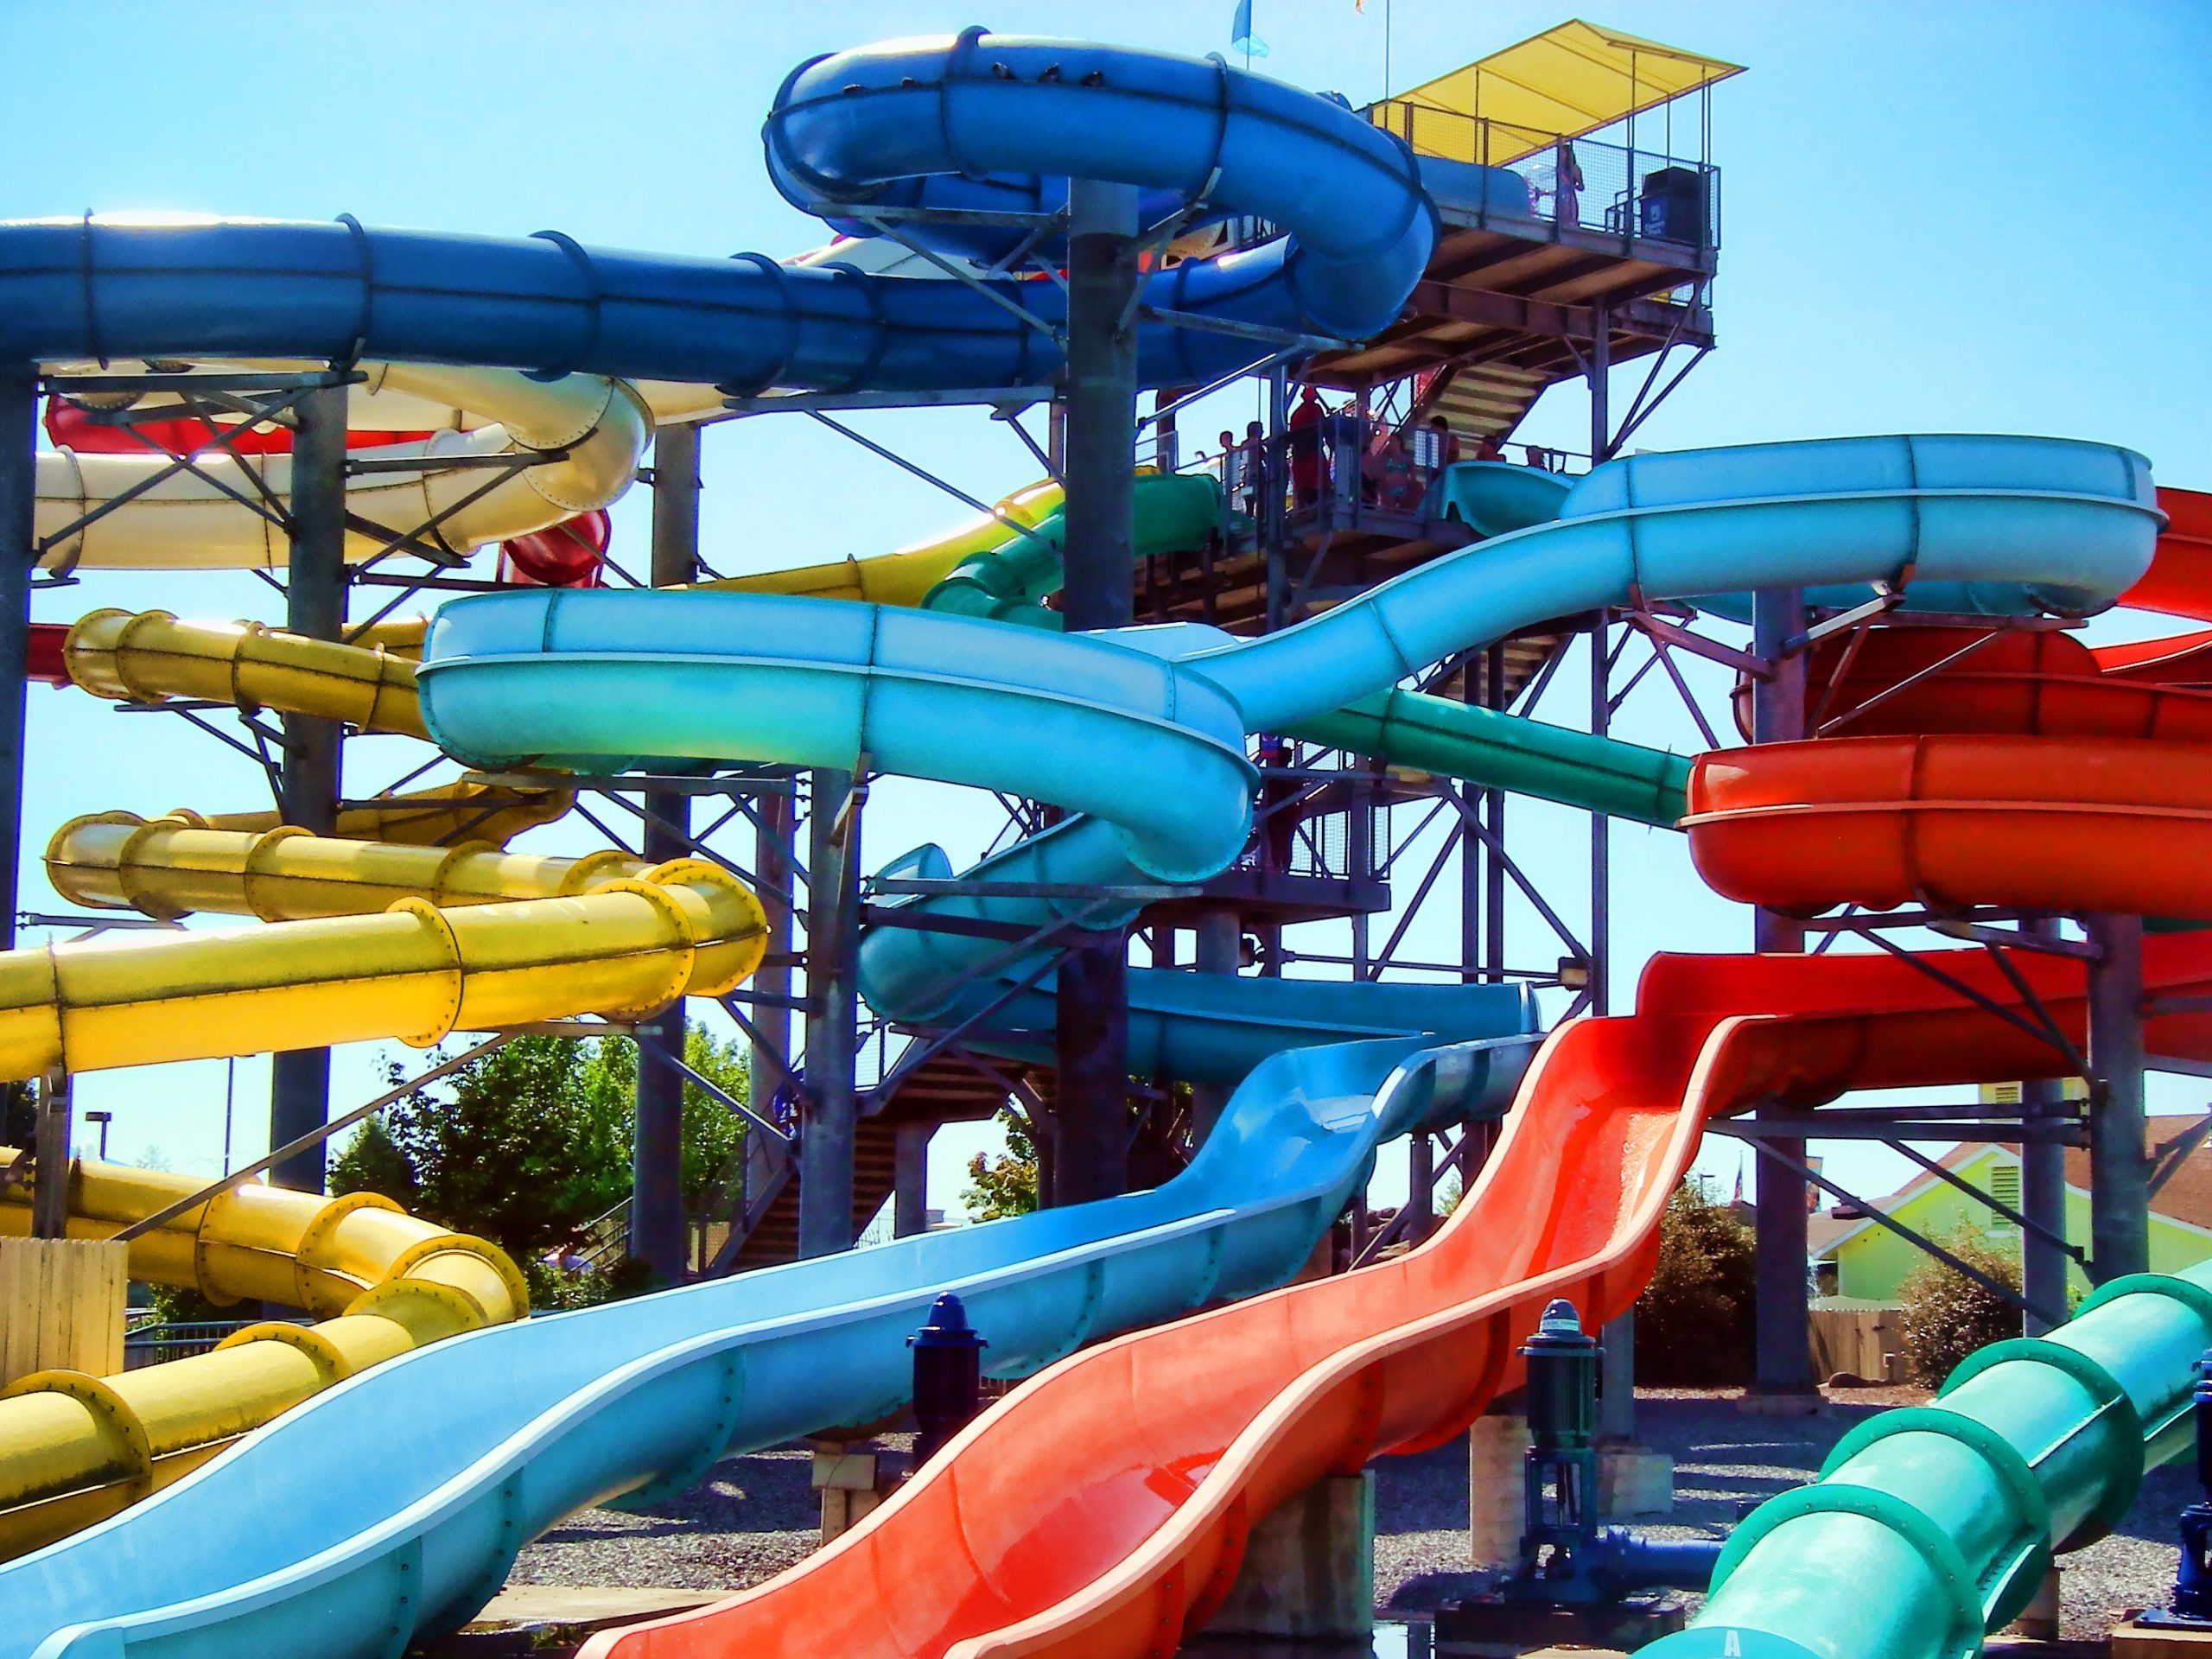 Amusement park water slides.